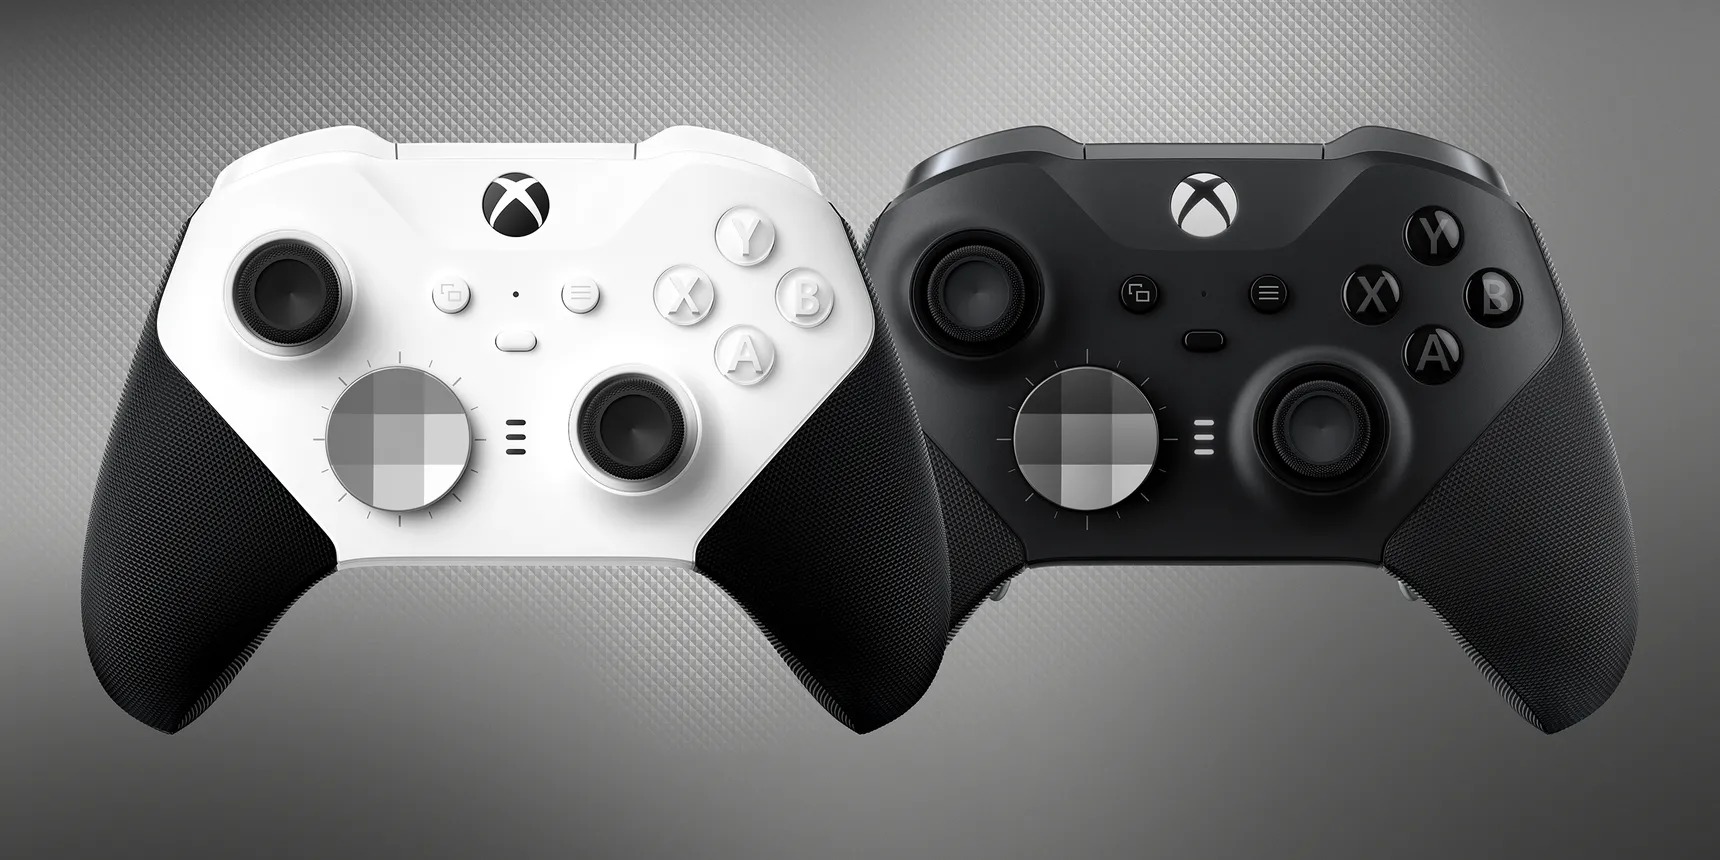 Το νέο χειριστήριο Xbox Elite 2 'Core' της Microsoft είναι μια οικονομικότερη έκδοση του γνωστού χειριστηρίου